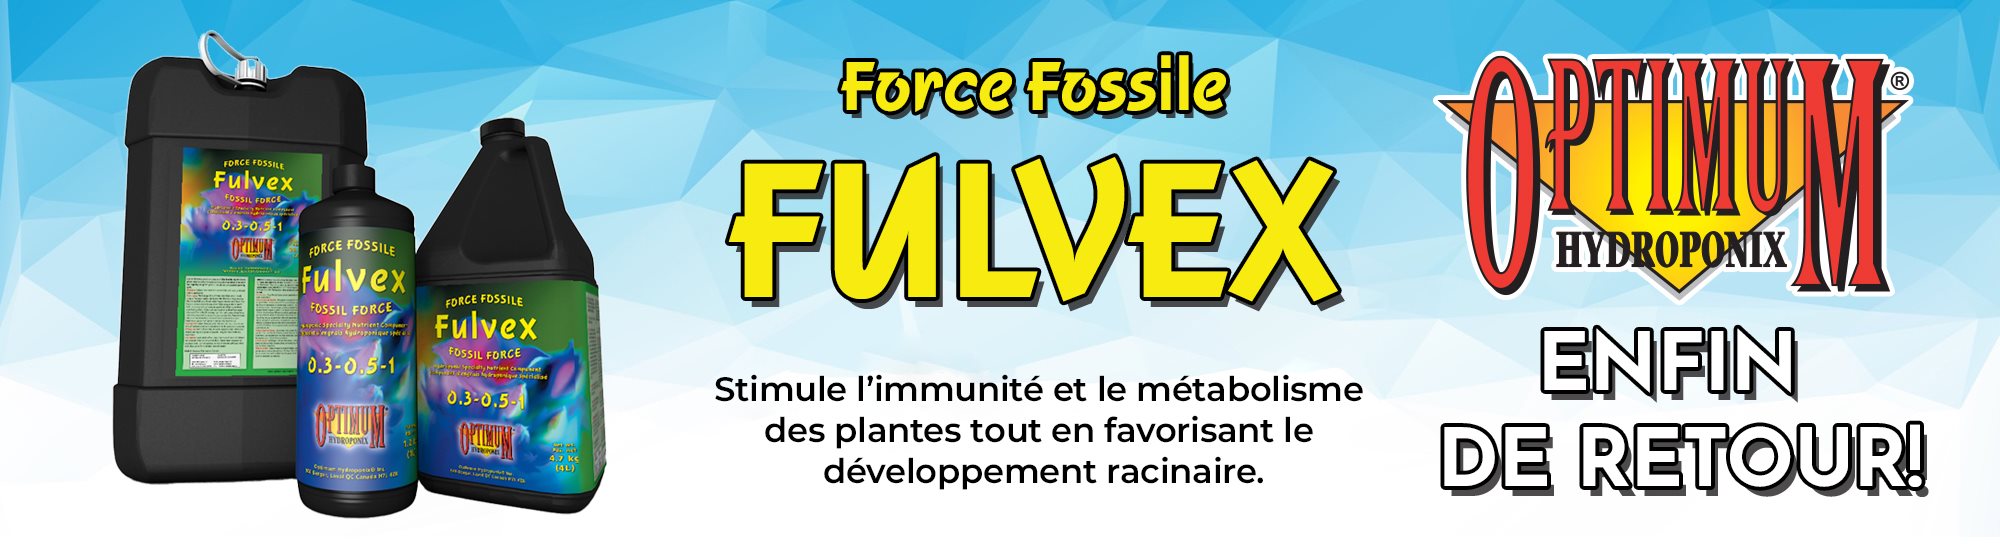 fulvex banner_fr